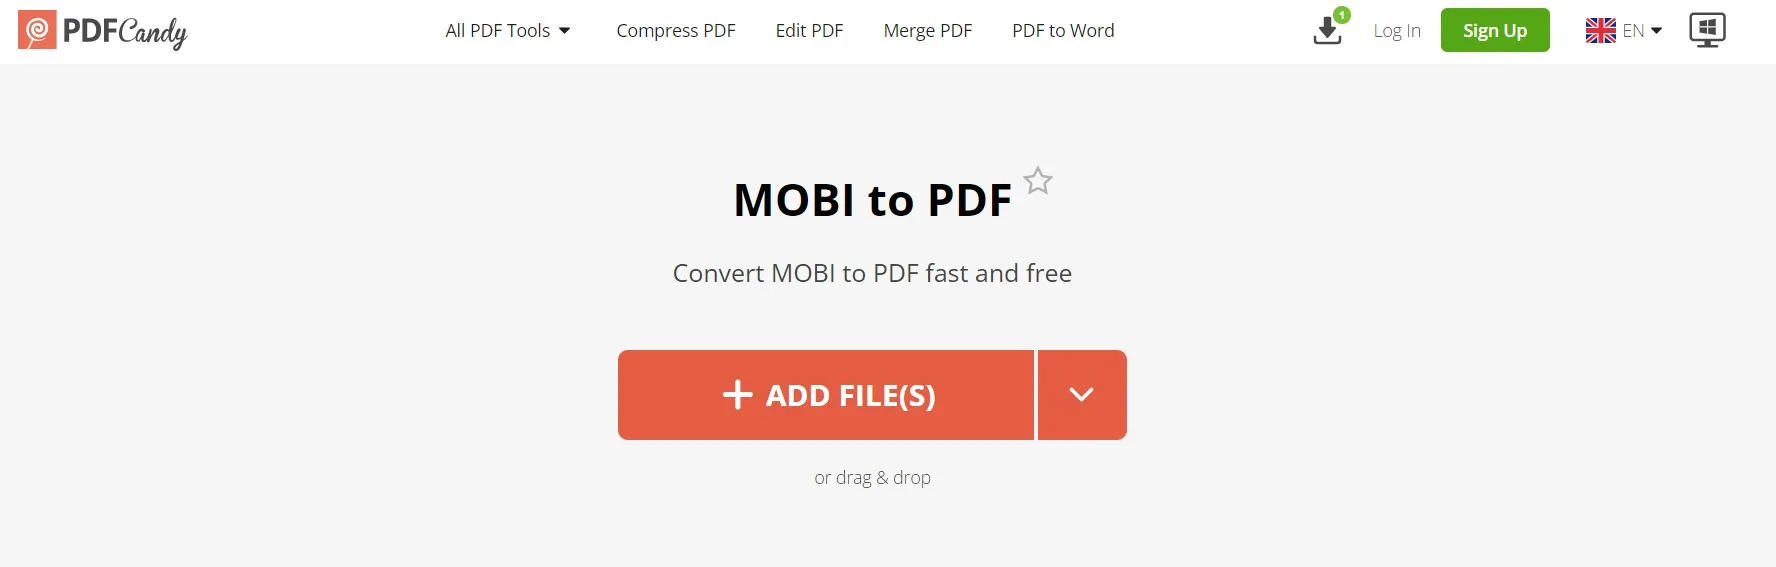 mobi to pdf PDF Candy